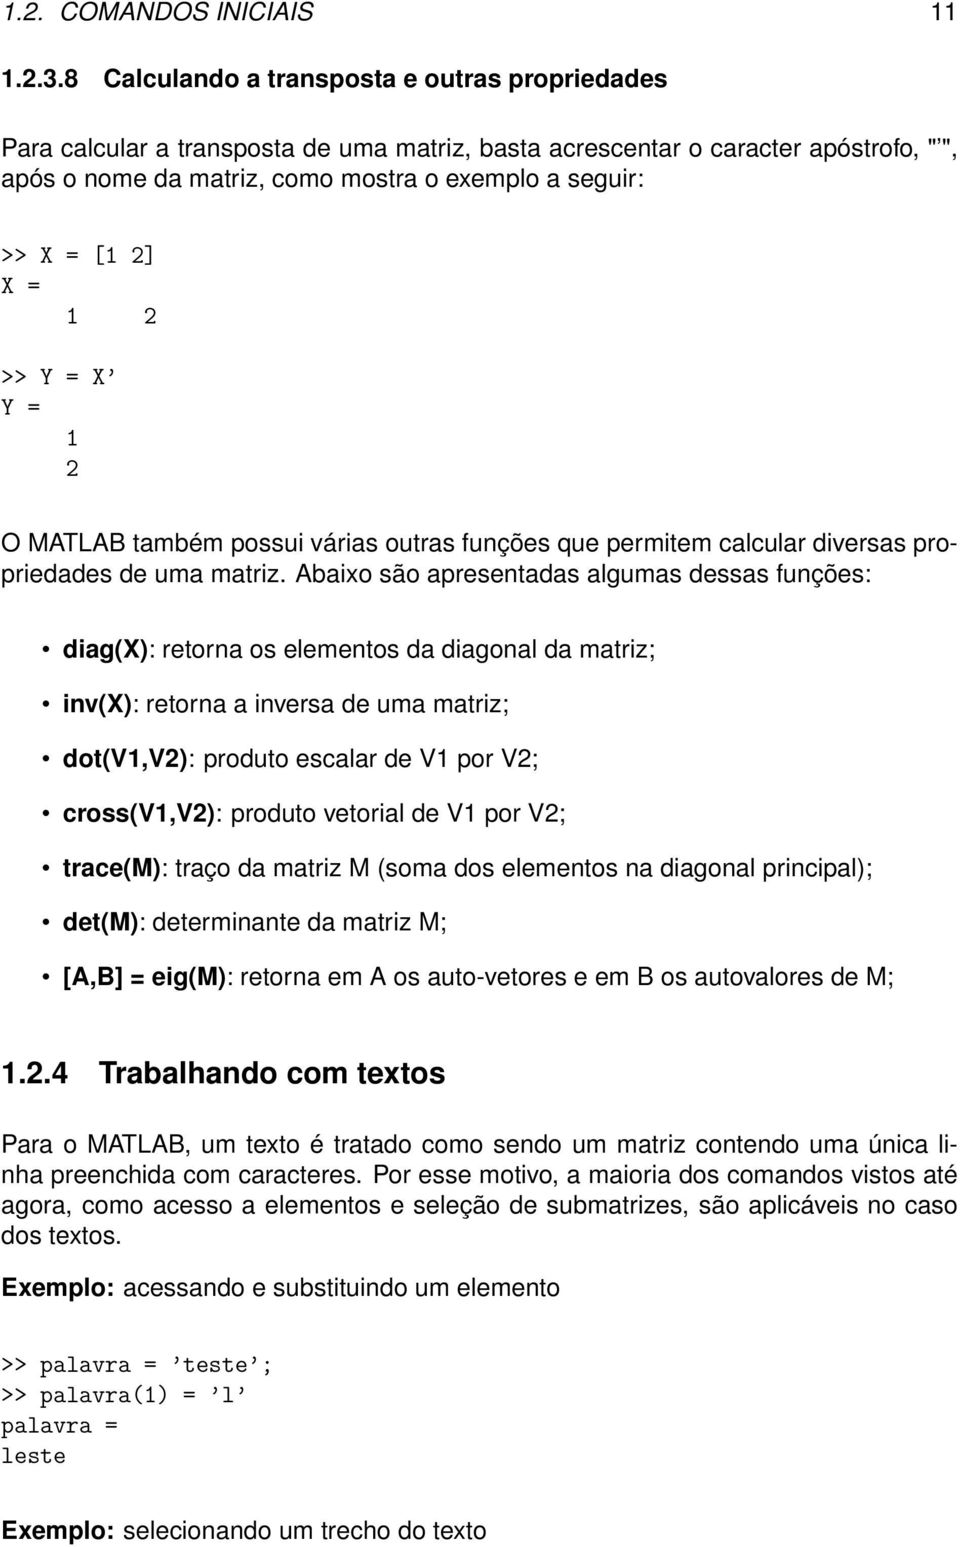 2] X = 1 2 >> Y = X Y = 1 2 O MATLAB também possui várias outras funções que permitem calcular diversas propriedades de uma matriz.